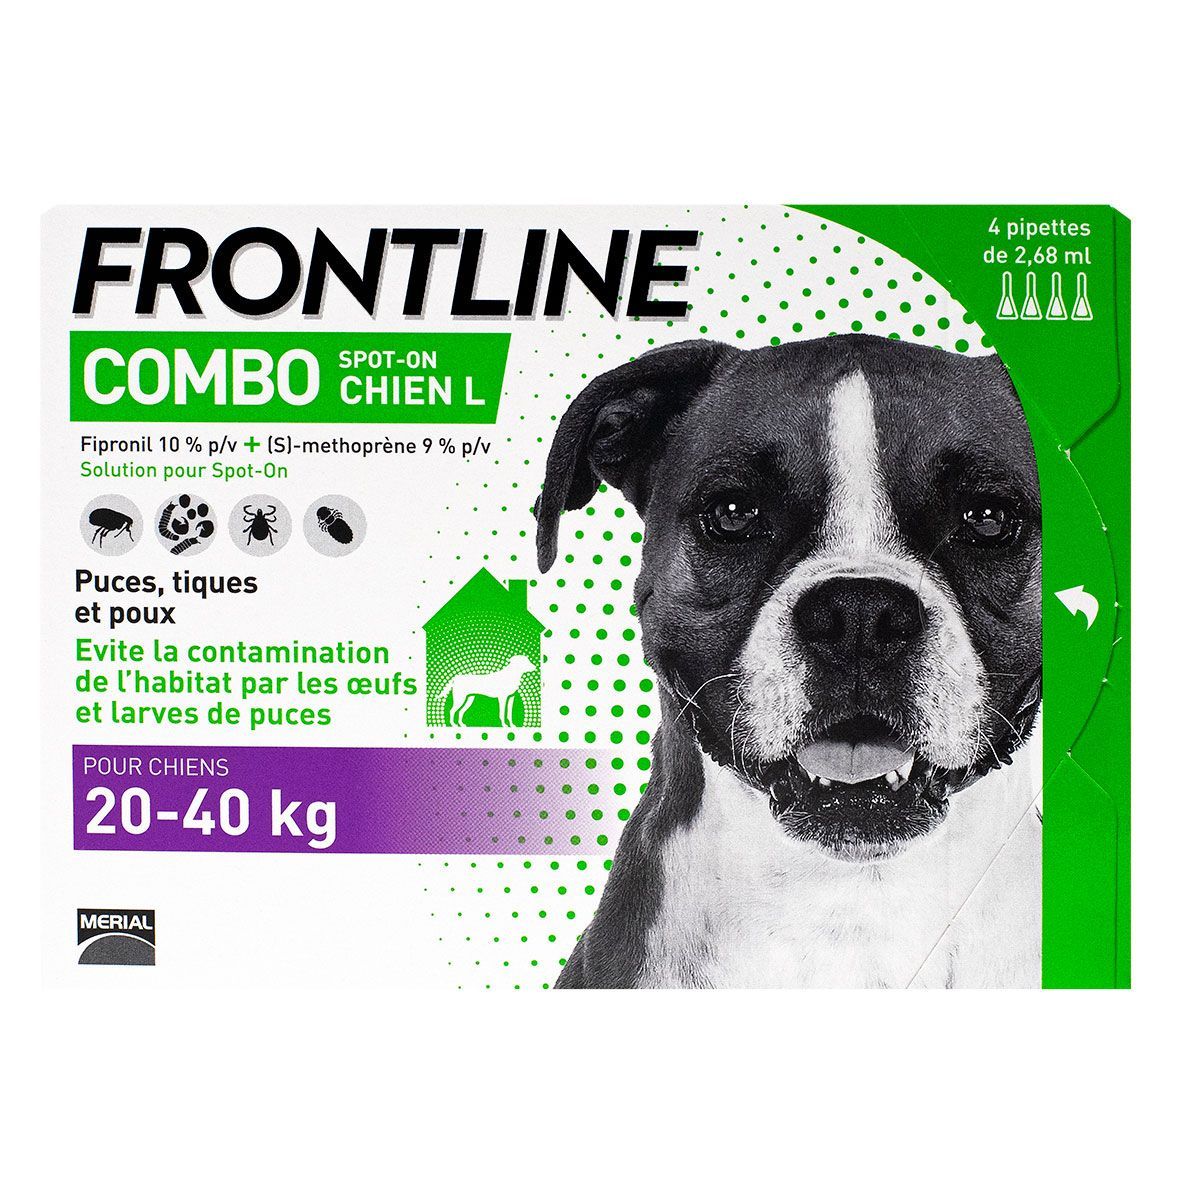 frontline combo chien 20-40kg est une solution anti-puces et anti-tiques